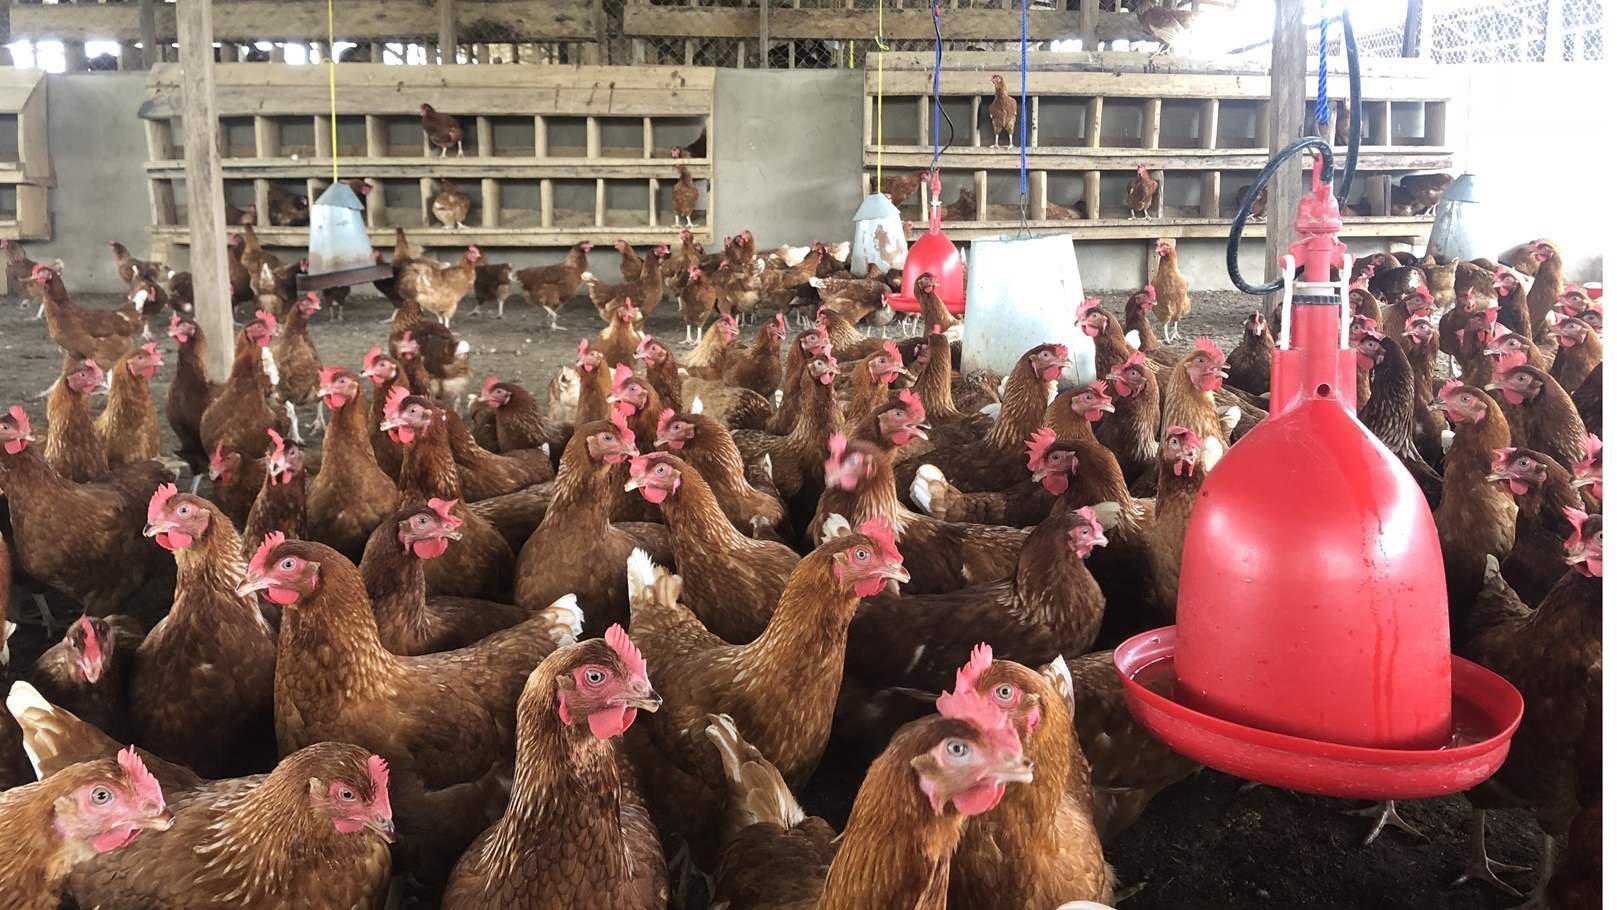 poultry-farm-2021-09-02-13-04-31-utc